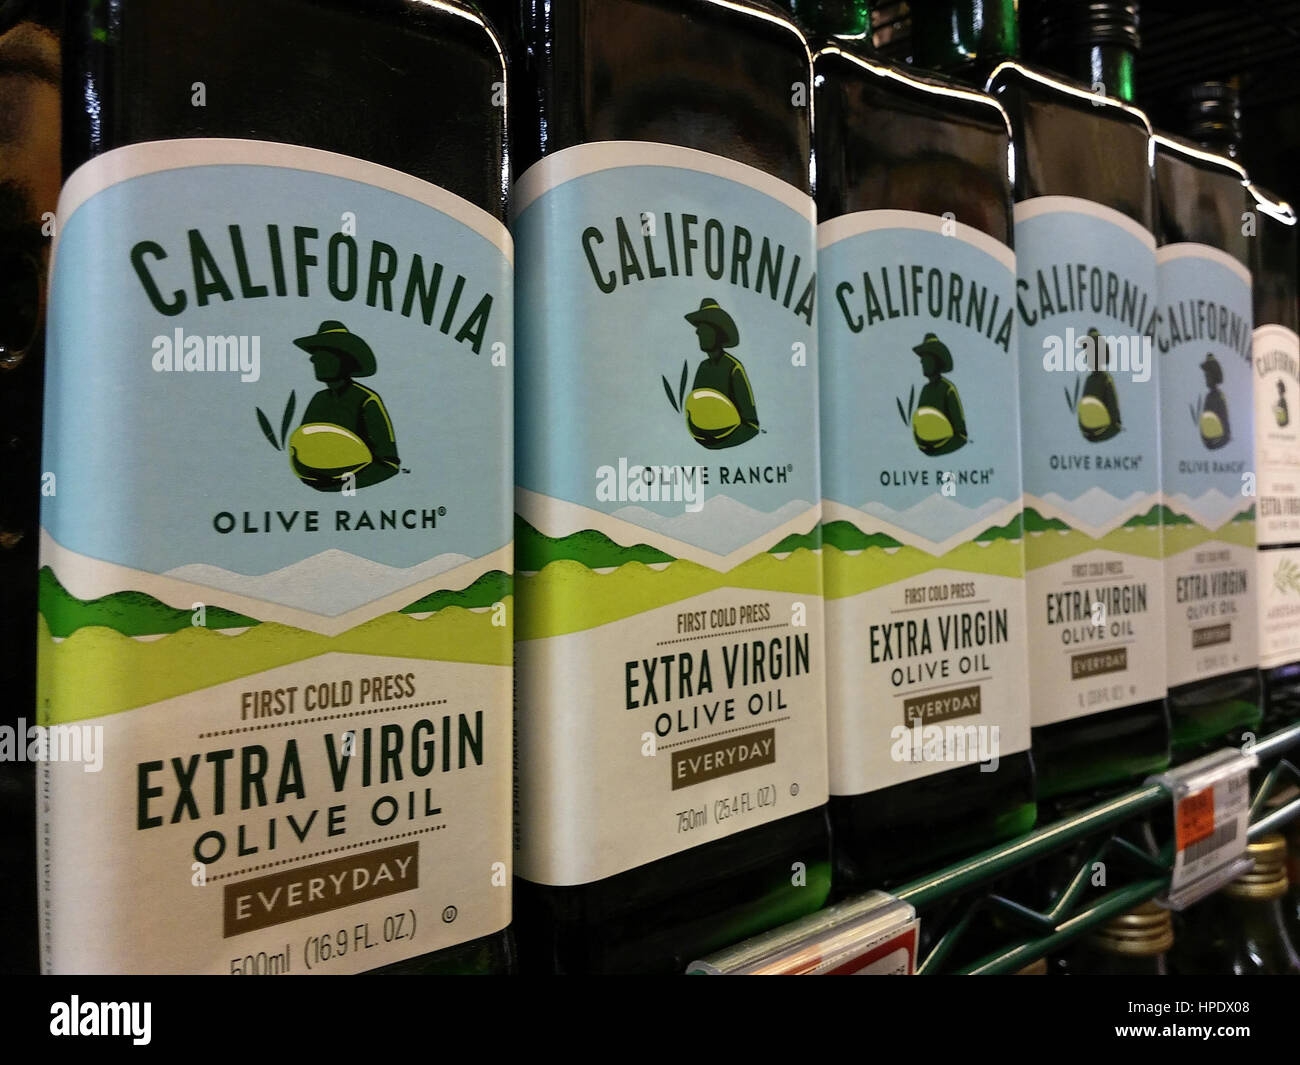 Flaschen von California Olive Ranch hausgemachtes Olivenöl auf einem Supermarktregal am Donnerstag, 16. Februar 2017 in New York. Verkauf von Olivenöl sind teilweise aufgrund der angeblichen Verdünnung von nativen Ölen aus Europa gestiegen.  (© Richard B. Levine) Stockfoto